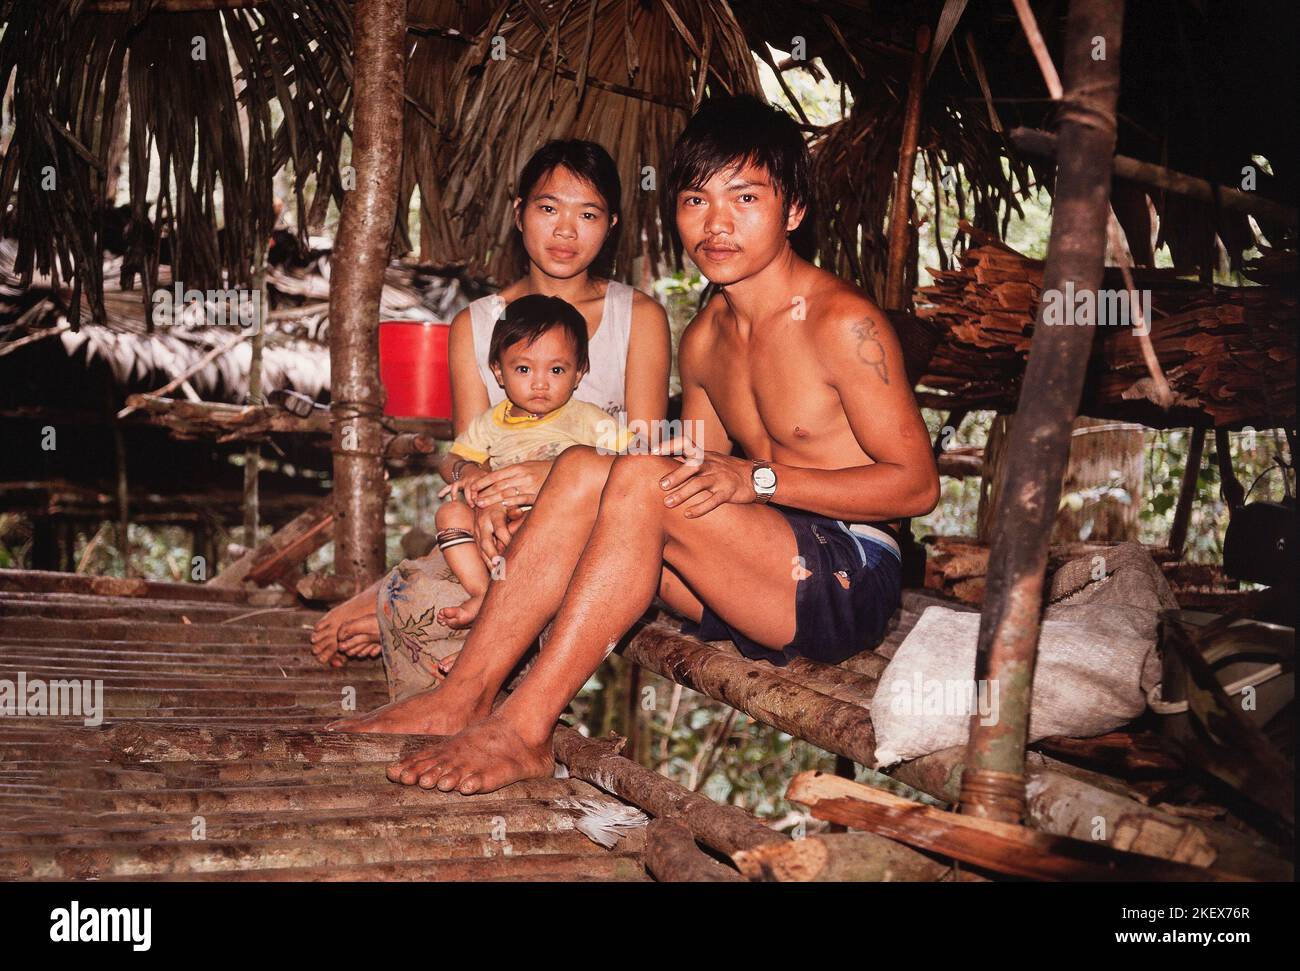 Pueblo indígena penan de Sarawak, Borneo, grupo familiar, Malasia Oriental Foto de stock